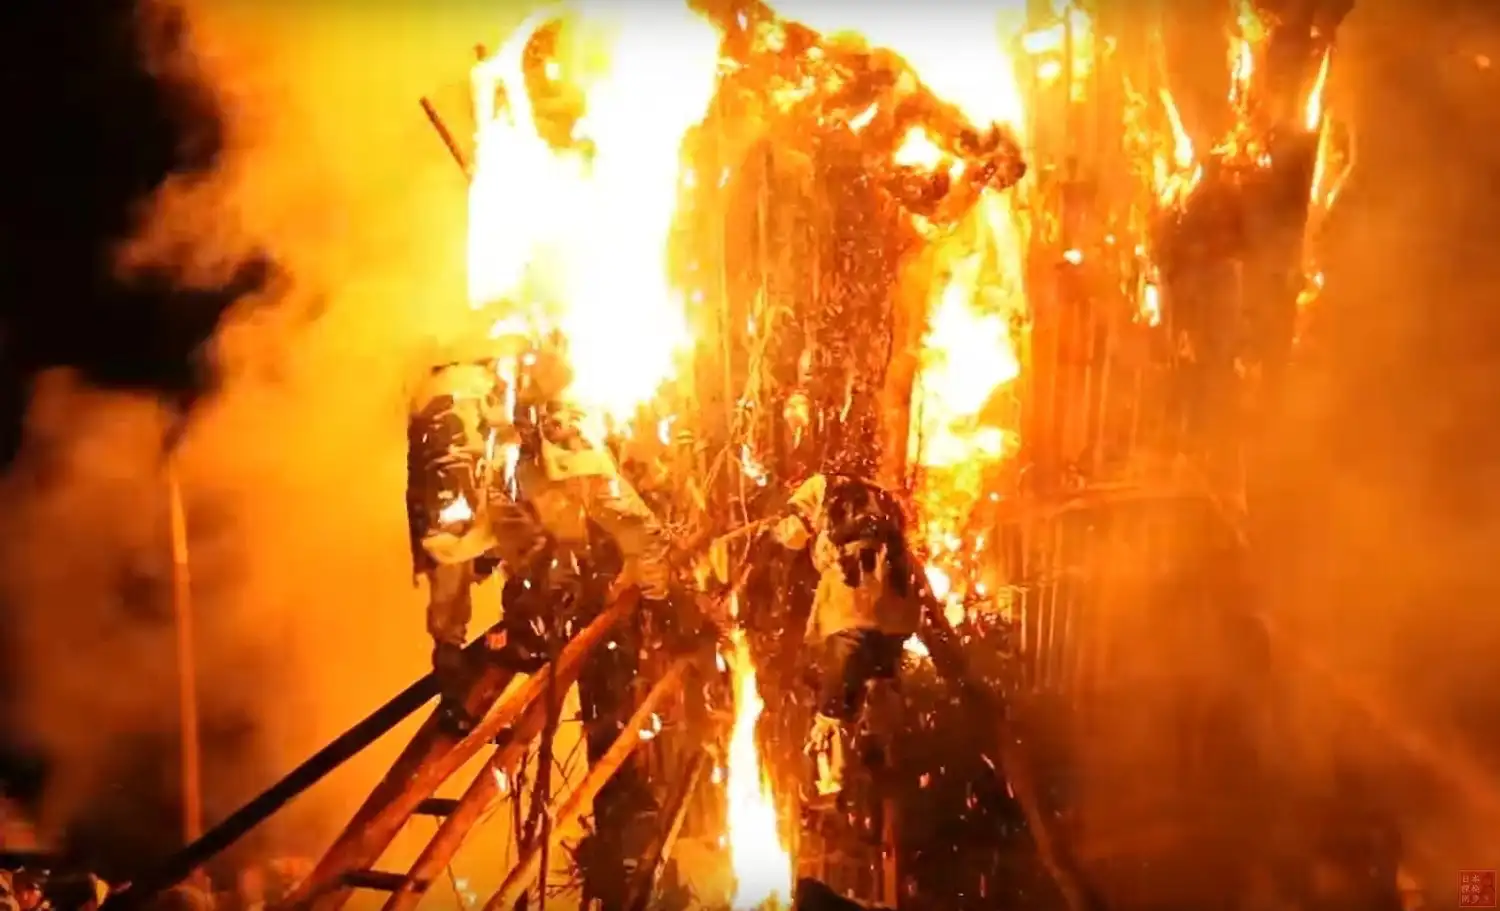 日本一危険な火祭り愛知県の「鳥羽の火祭り」は燃え盛る炎の中に男たち